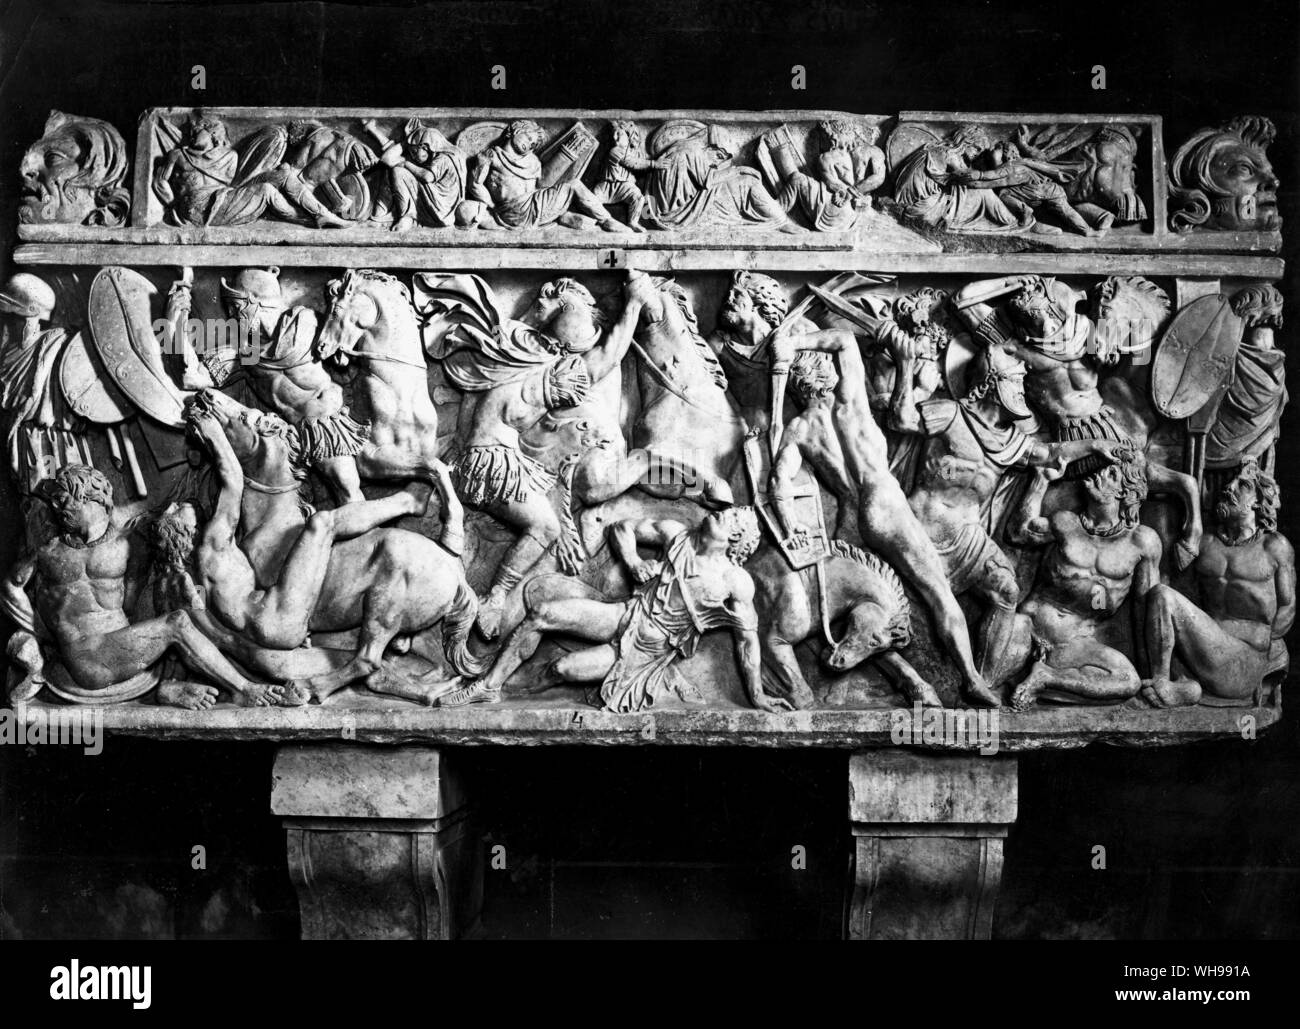 Alten Kriegsführung/die Belagerung von Alesia abgeschlossen viele Jahre der Kämpfe zwischen den Römern und Galliern, im Relief dargestellt. Stockfoto